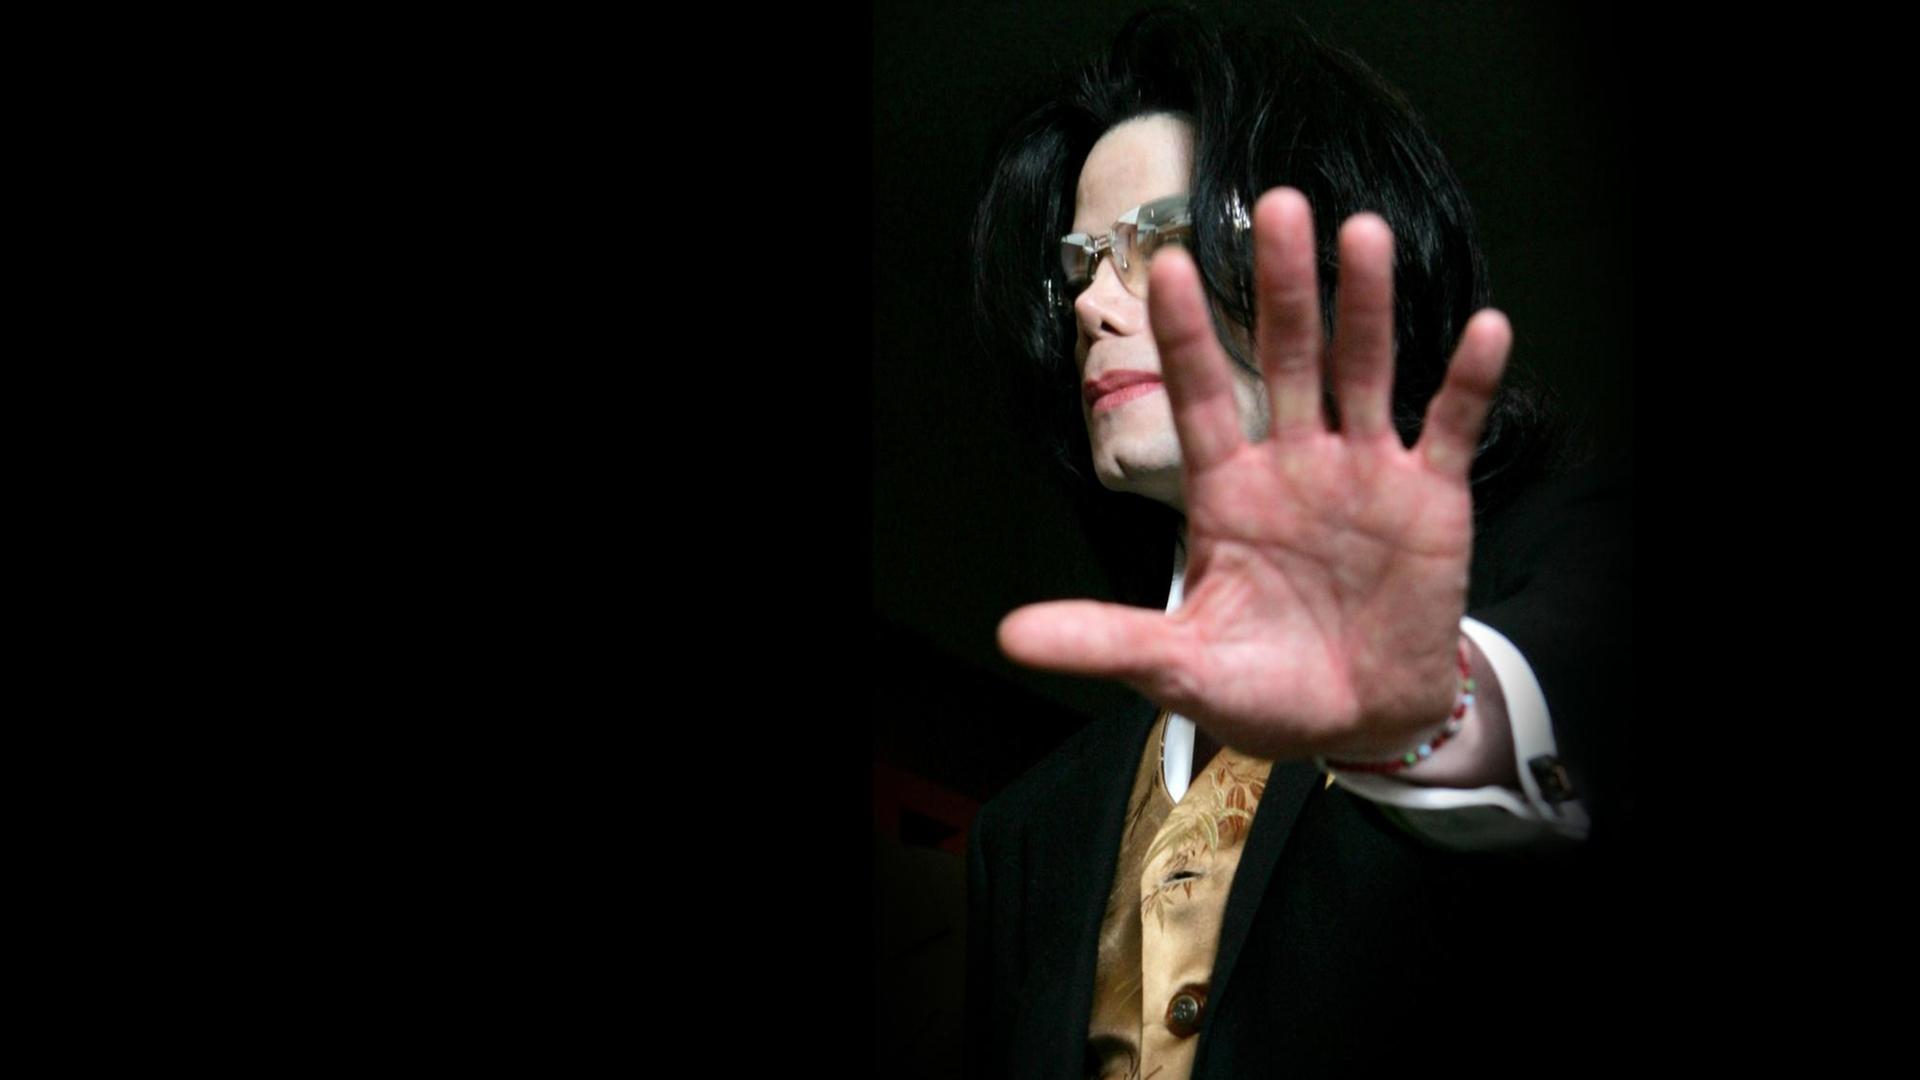 Michael Jackson streckt die Handlfäche der linken Hand Richtung Kamera. Er trägt eine Sonnenbrille. Der Hintergrund ist schwarz.